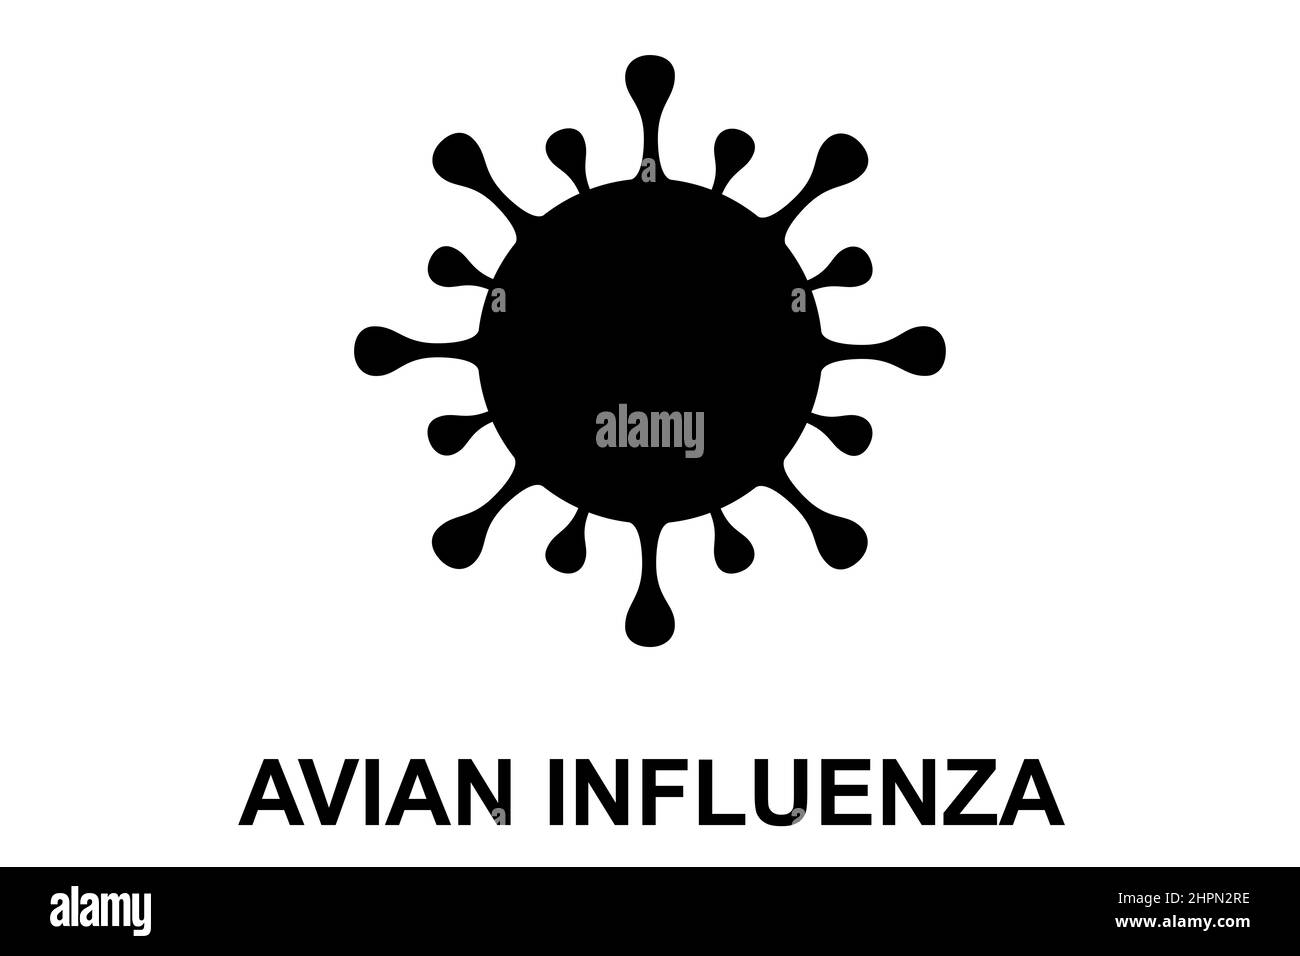 Avian influenza (H5N1). Bird flu virus illustration. H5N1 bird flu epidemic disease. Chinese pandemic danger. Viruses from animals to people Stock Photo